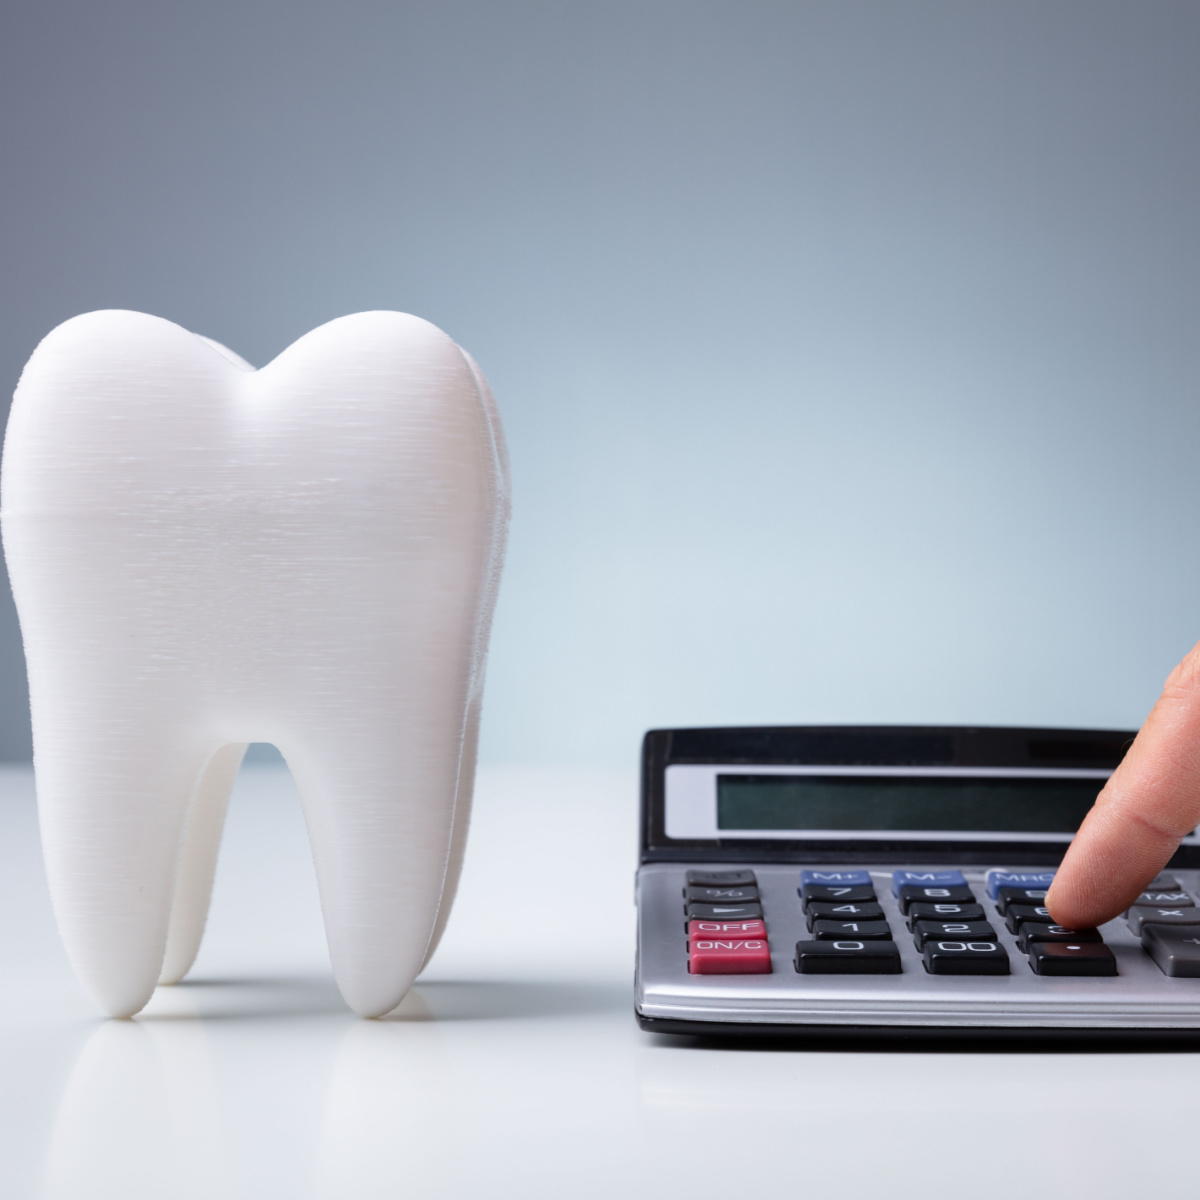 Dental insurance for Houston dental treatments